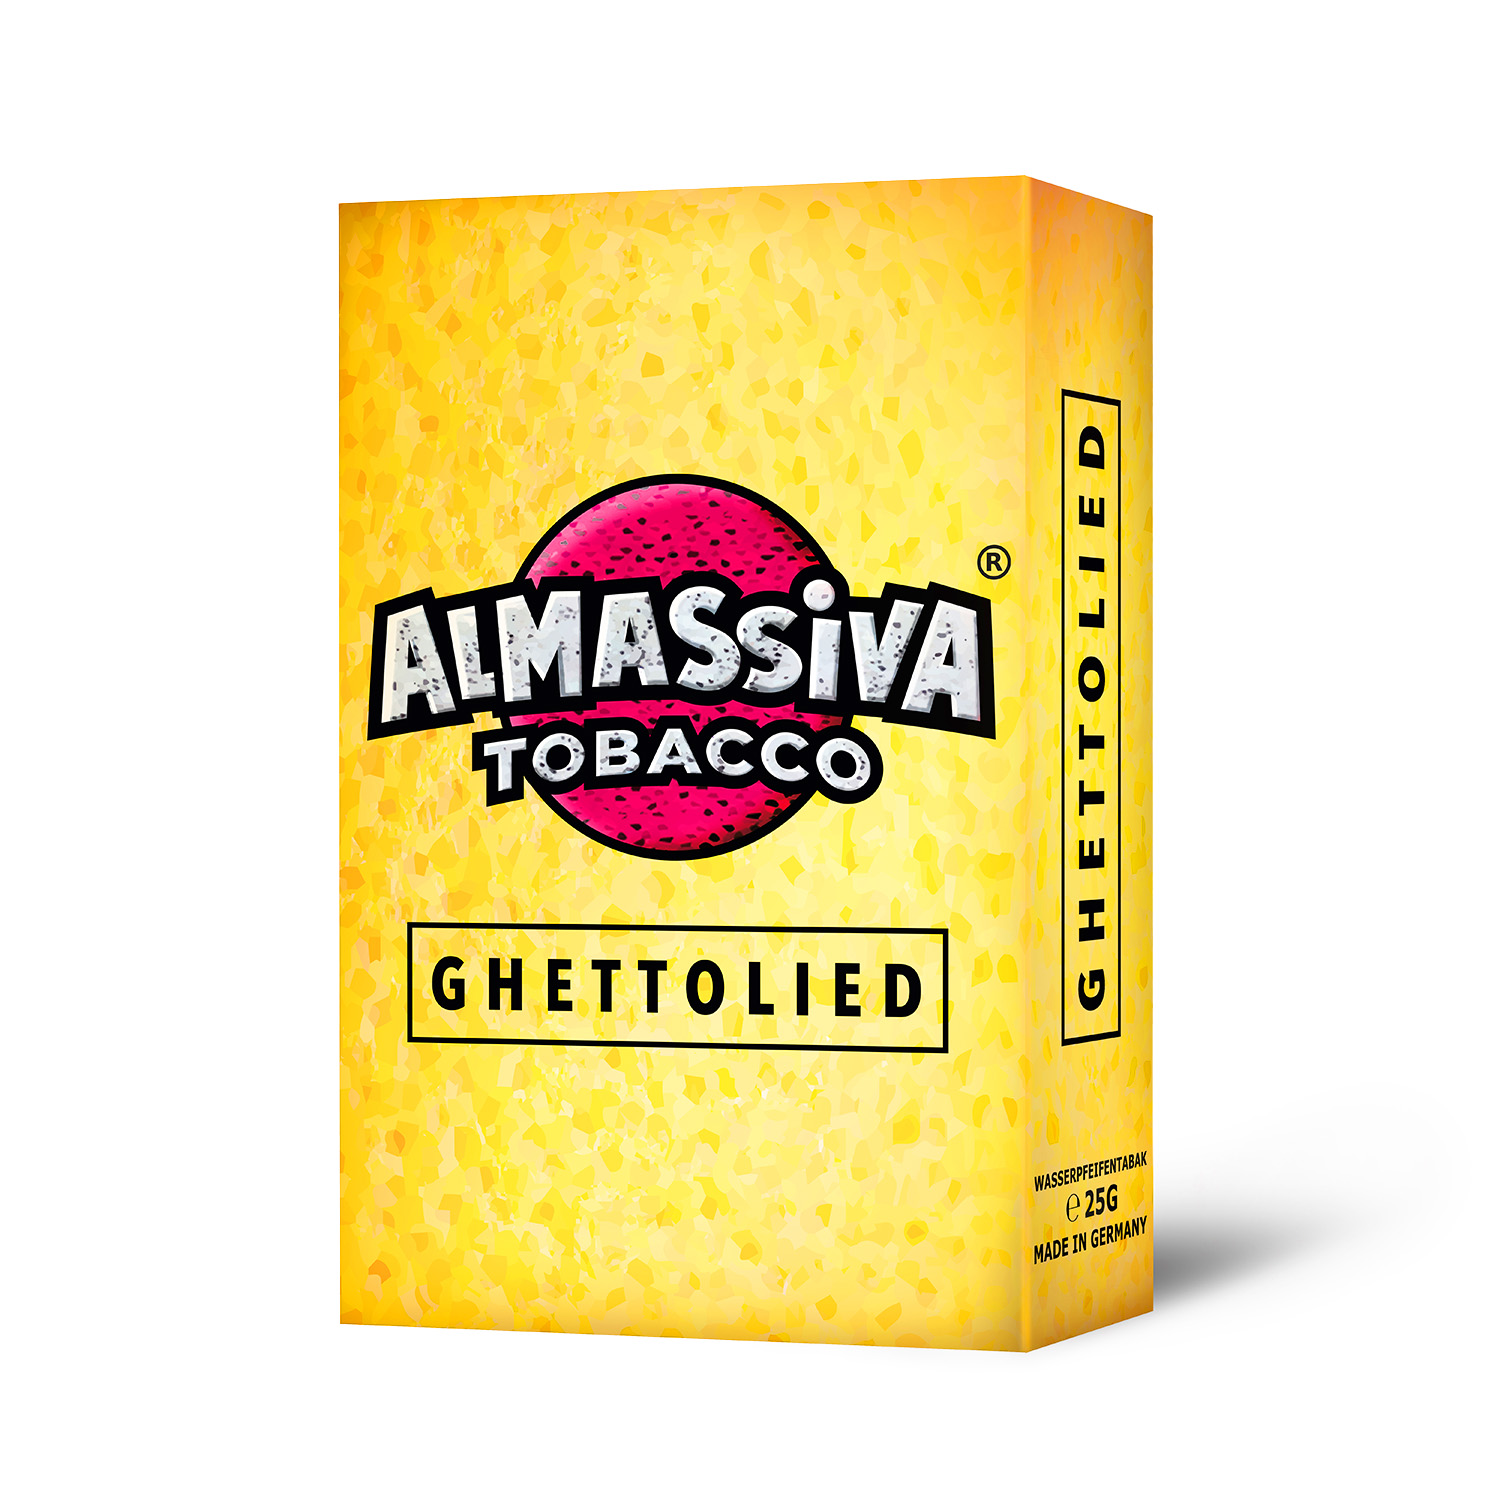 ALMASSIVA - GHETTOLIED 